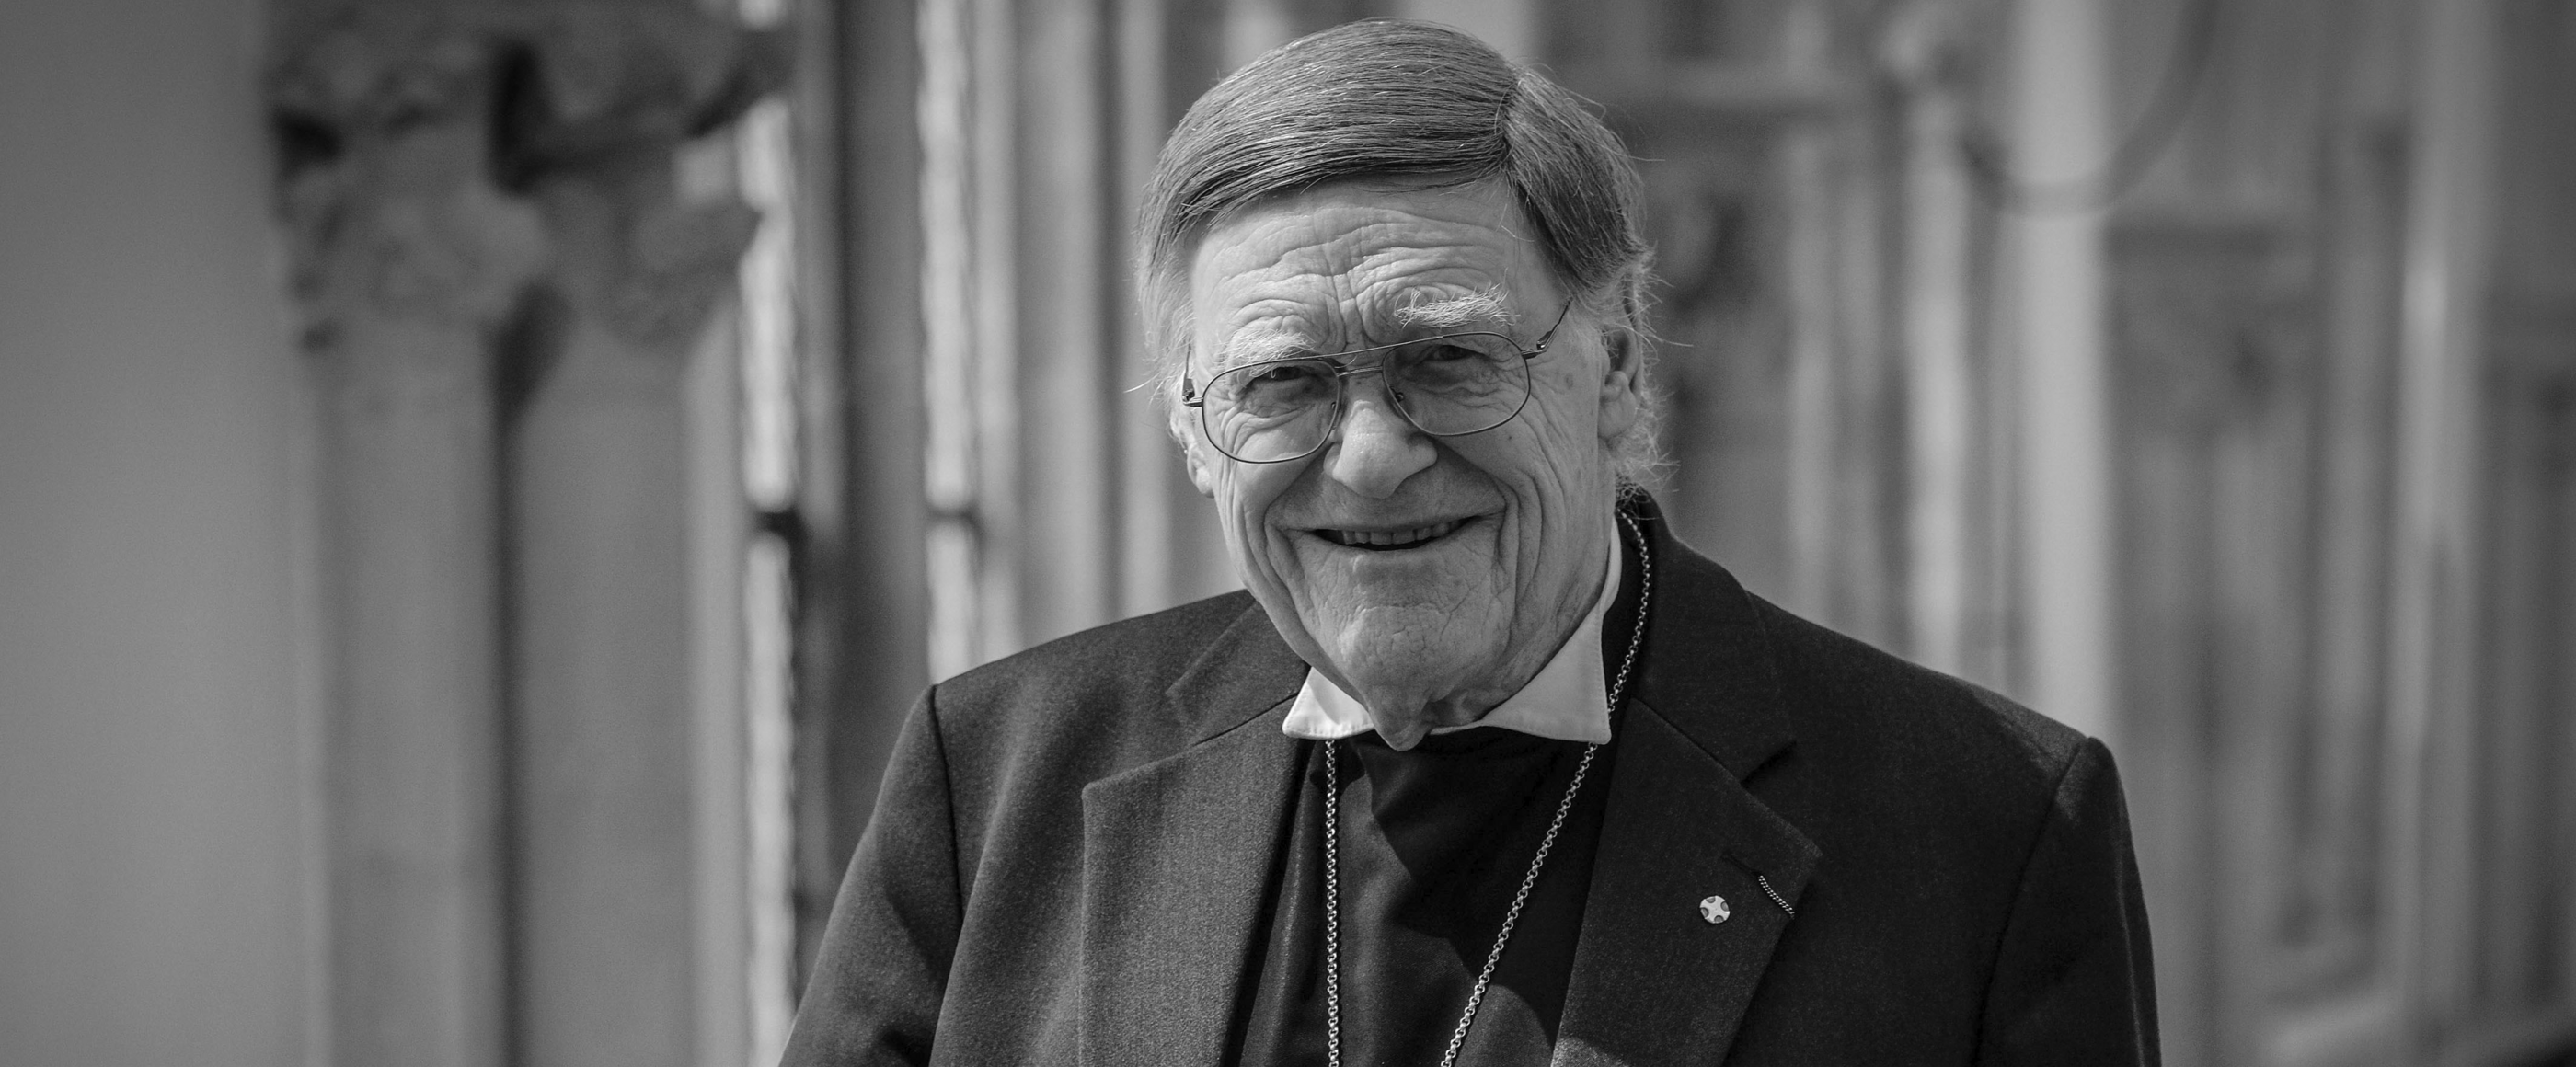 Altbischof Horst Hirschler ist im Alter von 89 Jahren gestorben.